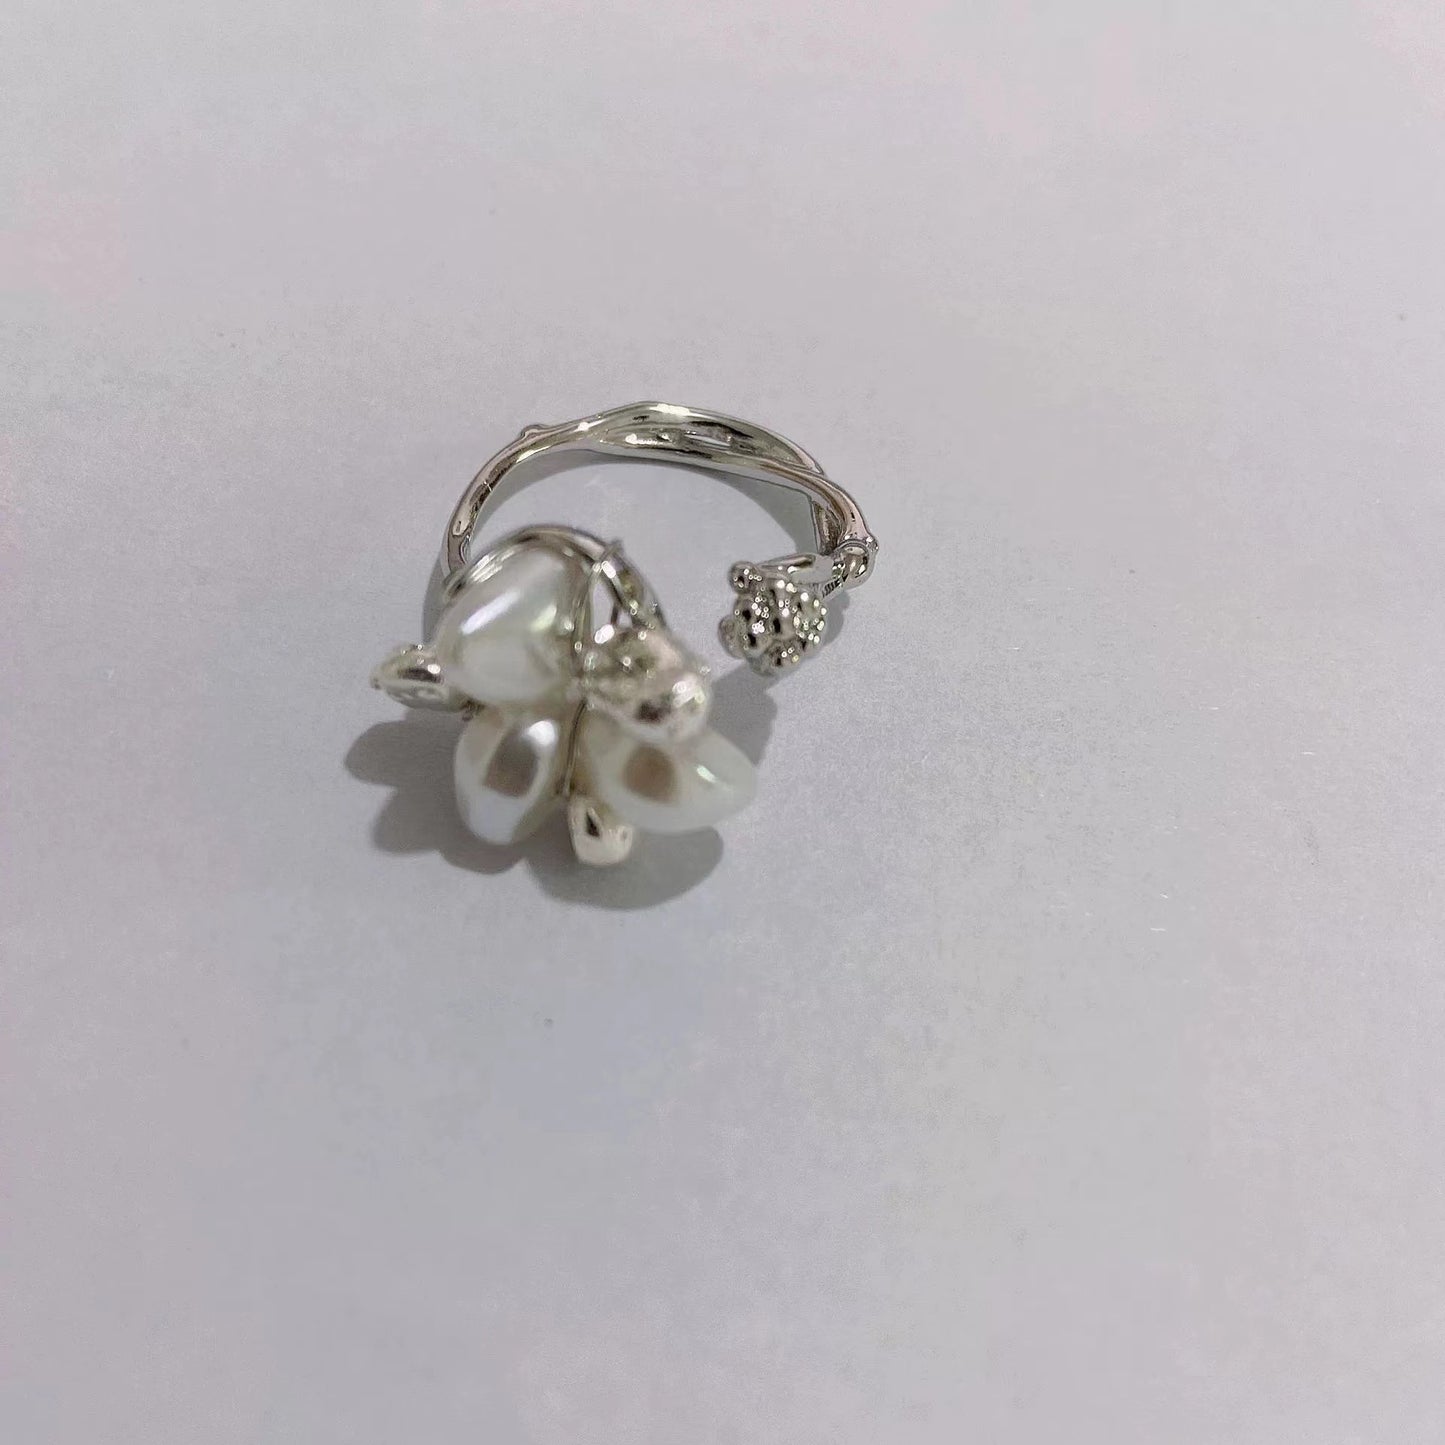 Floral metal ring